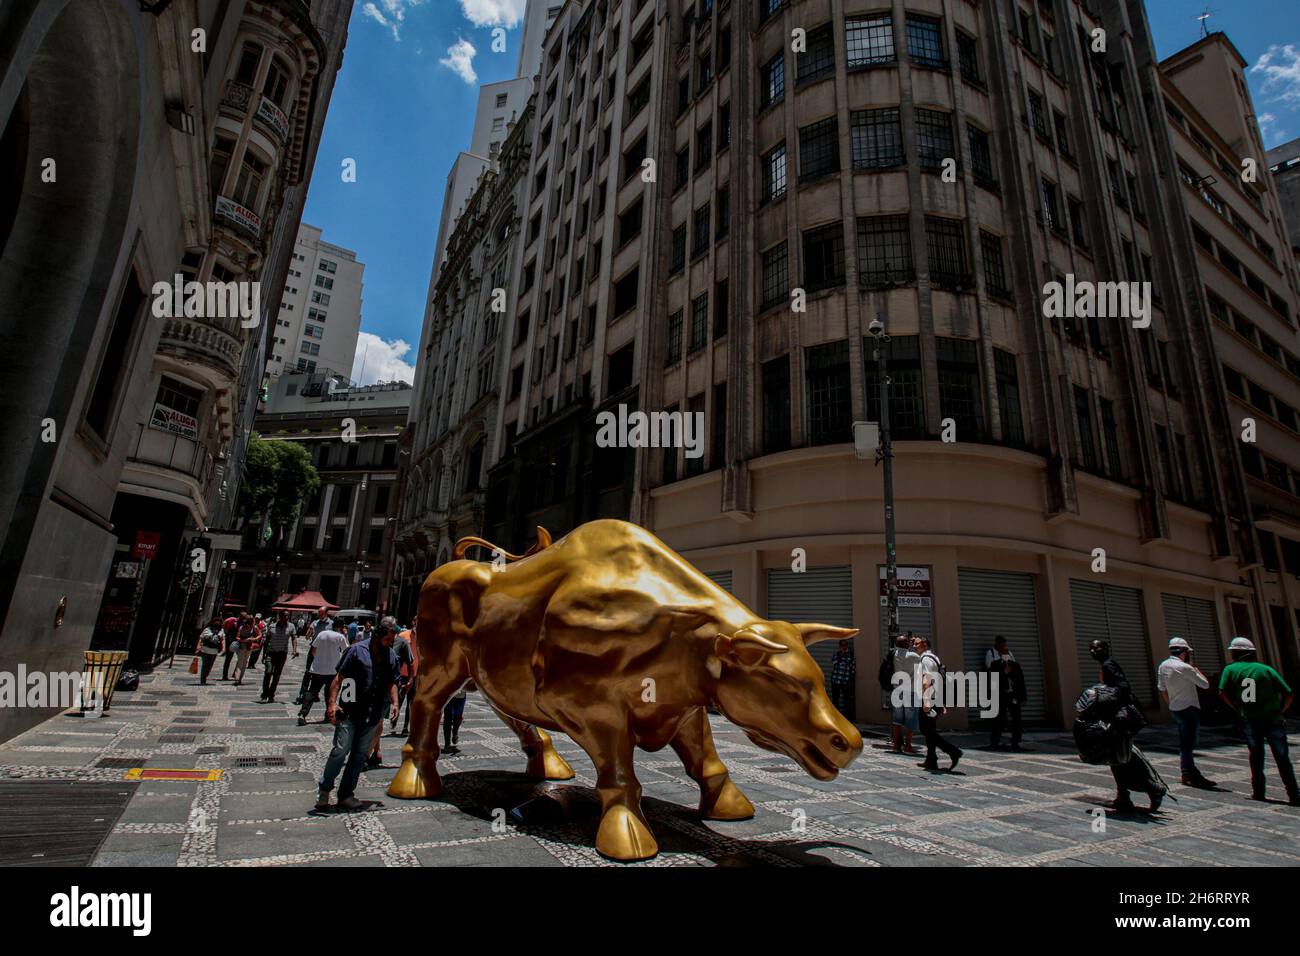 SP - San Paolo - 11/17/2021 - SAN PAOLO, BORSA SCULTURA - popolare  osservare e scattare foto di fronte alla scultura di un toro installato di  fronte alla sede della Borsa Brasiliana (